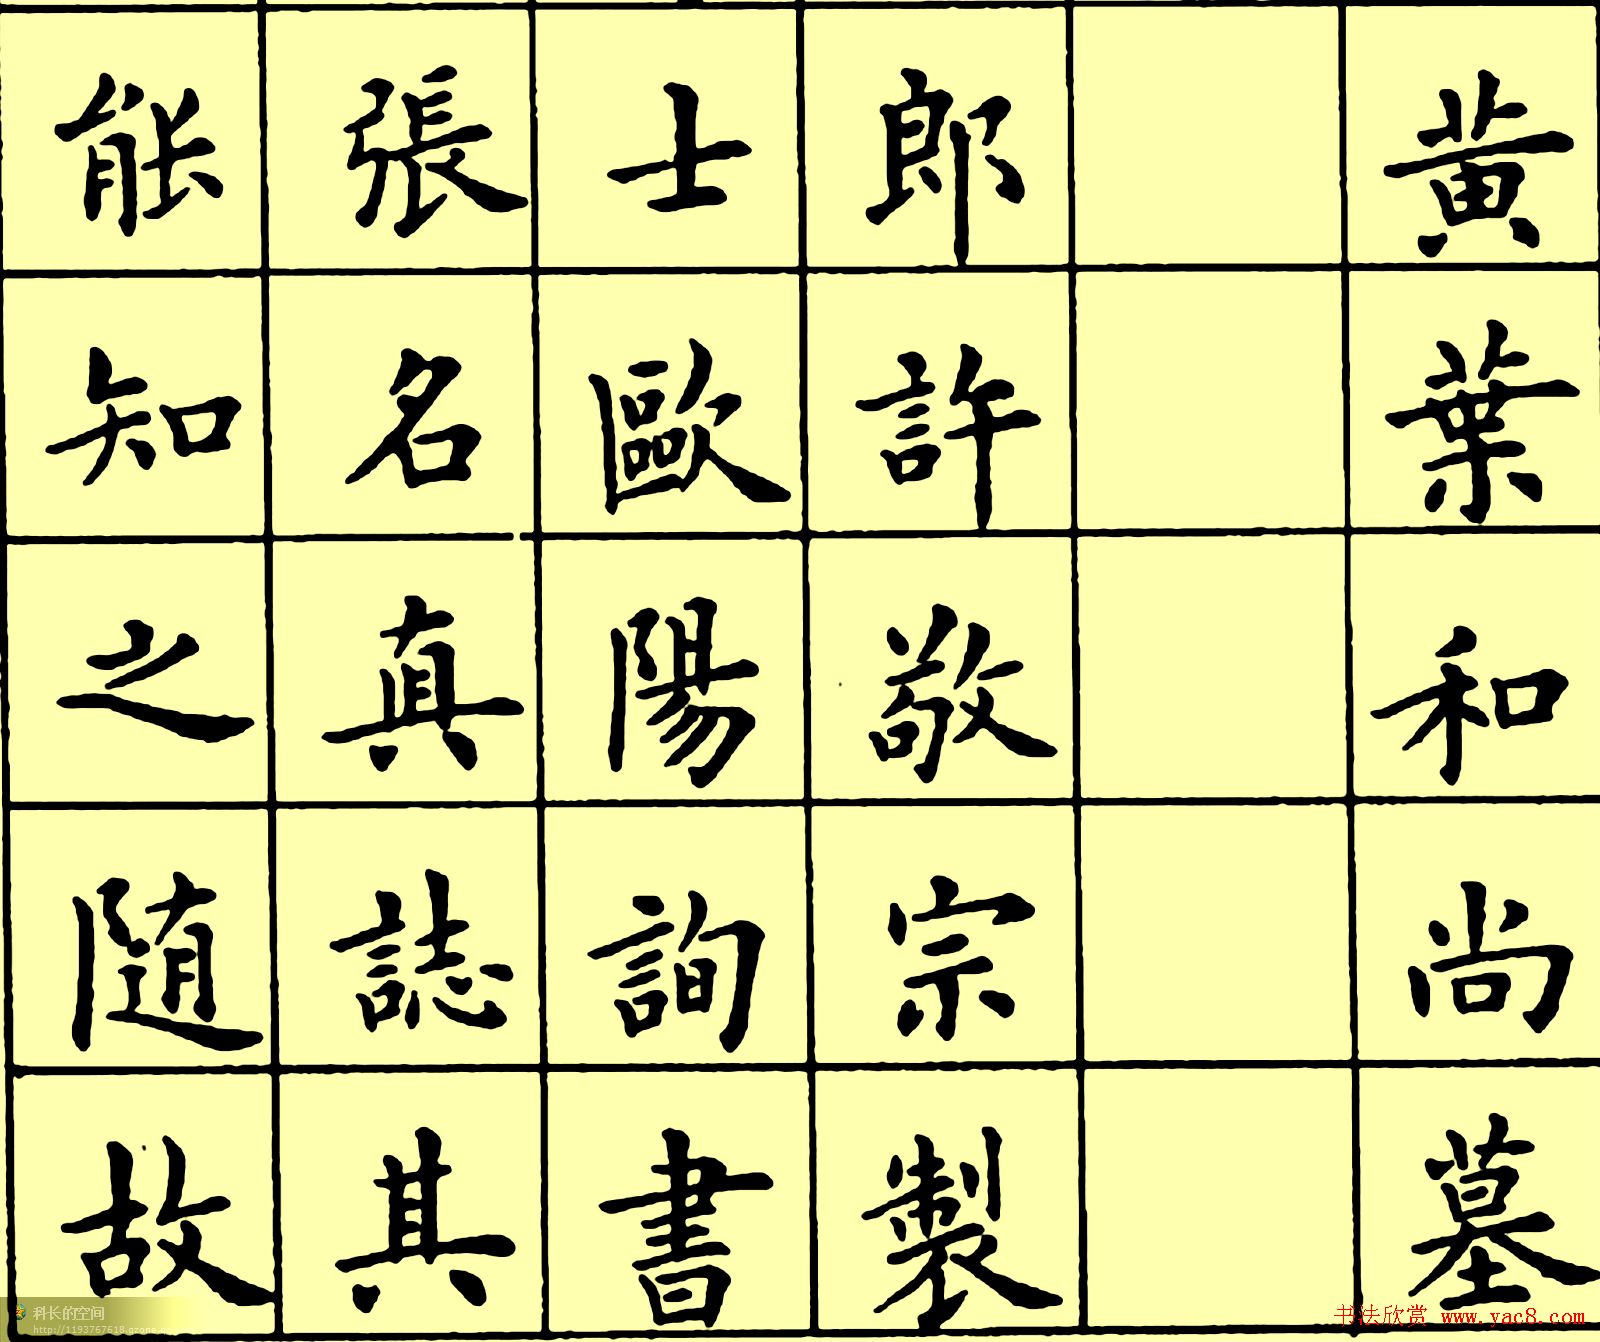 卢中南楷书《黄叶和尚墓志铭》